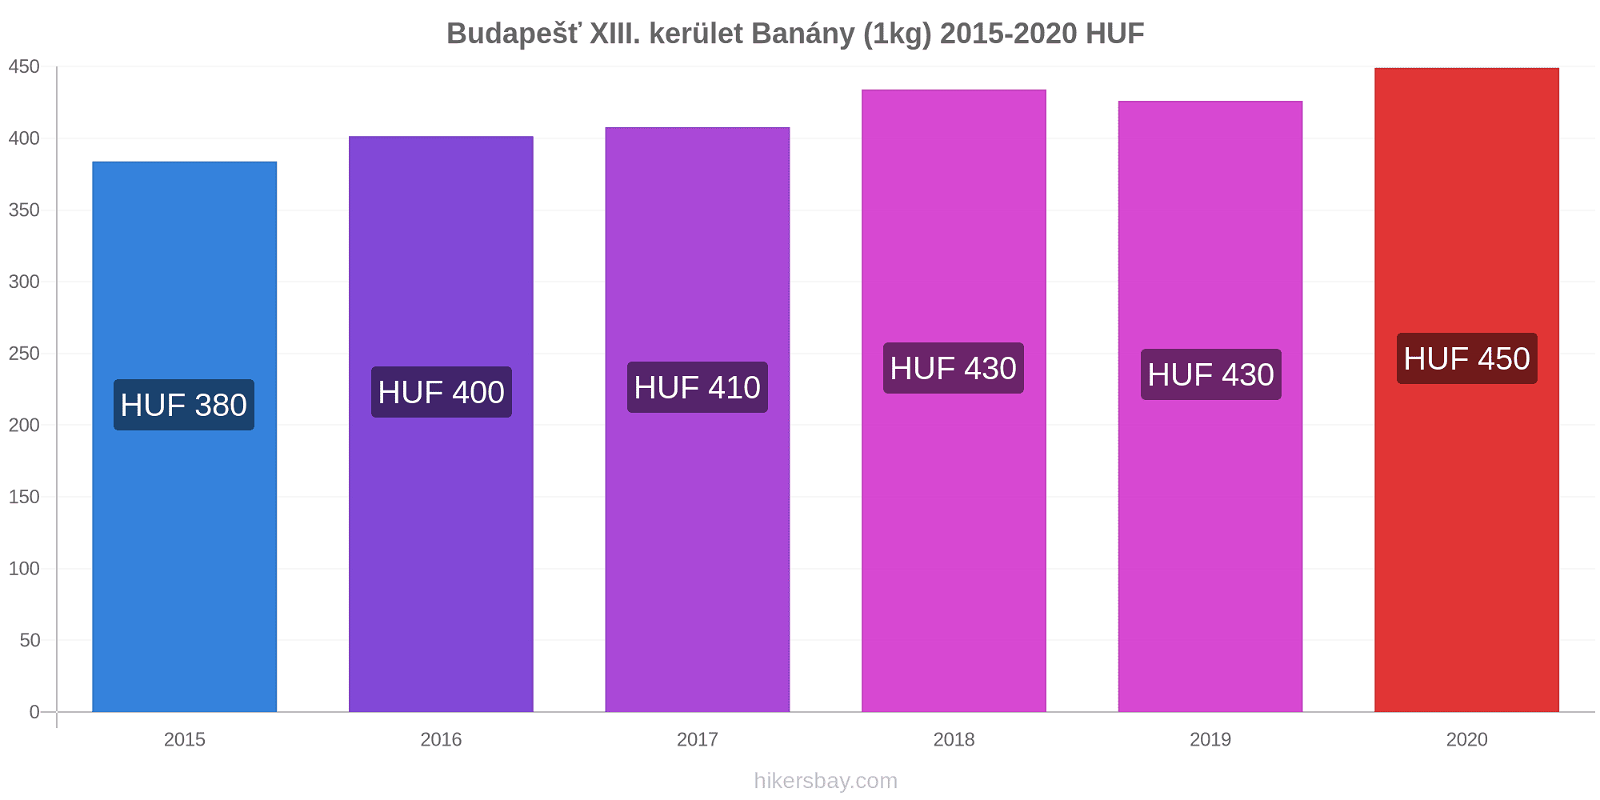 Budapešť XIII. kerület změny cen Banány (1kg) hikersbay.com